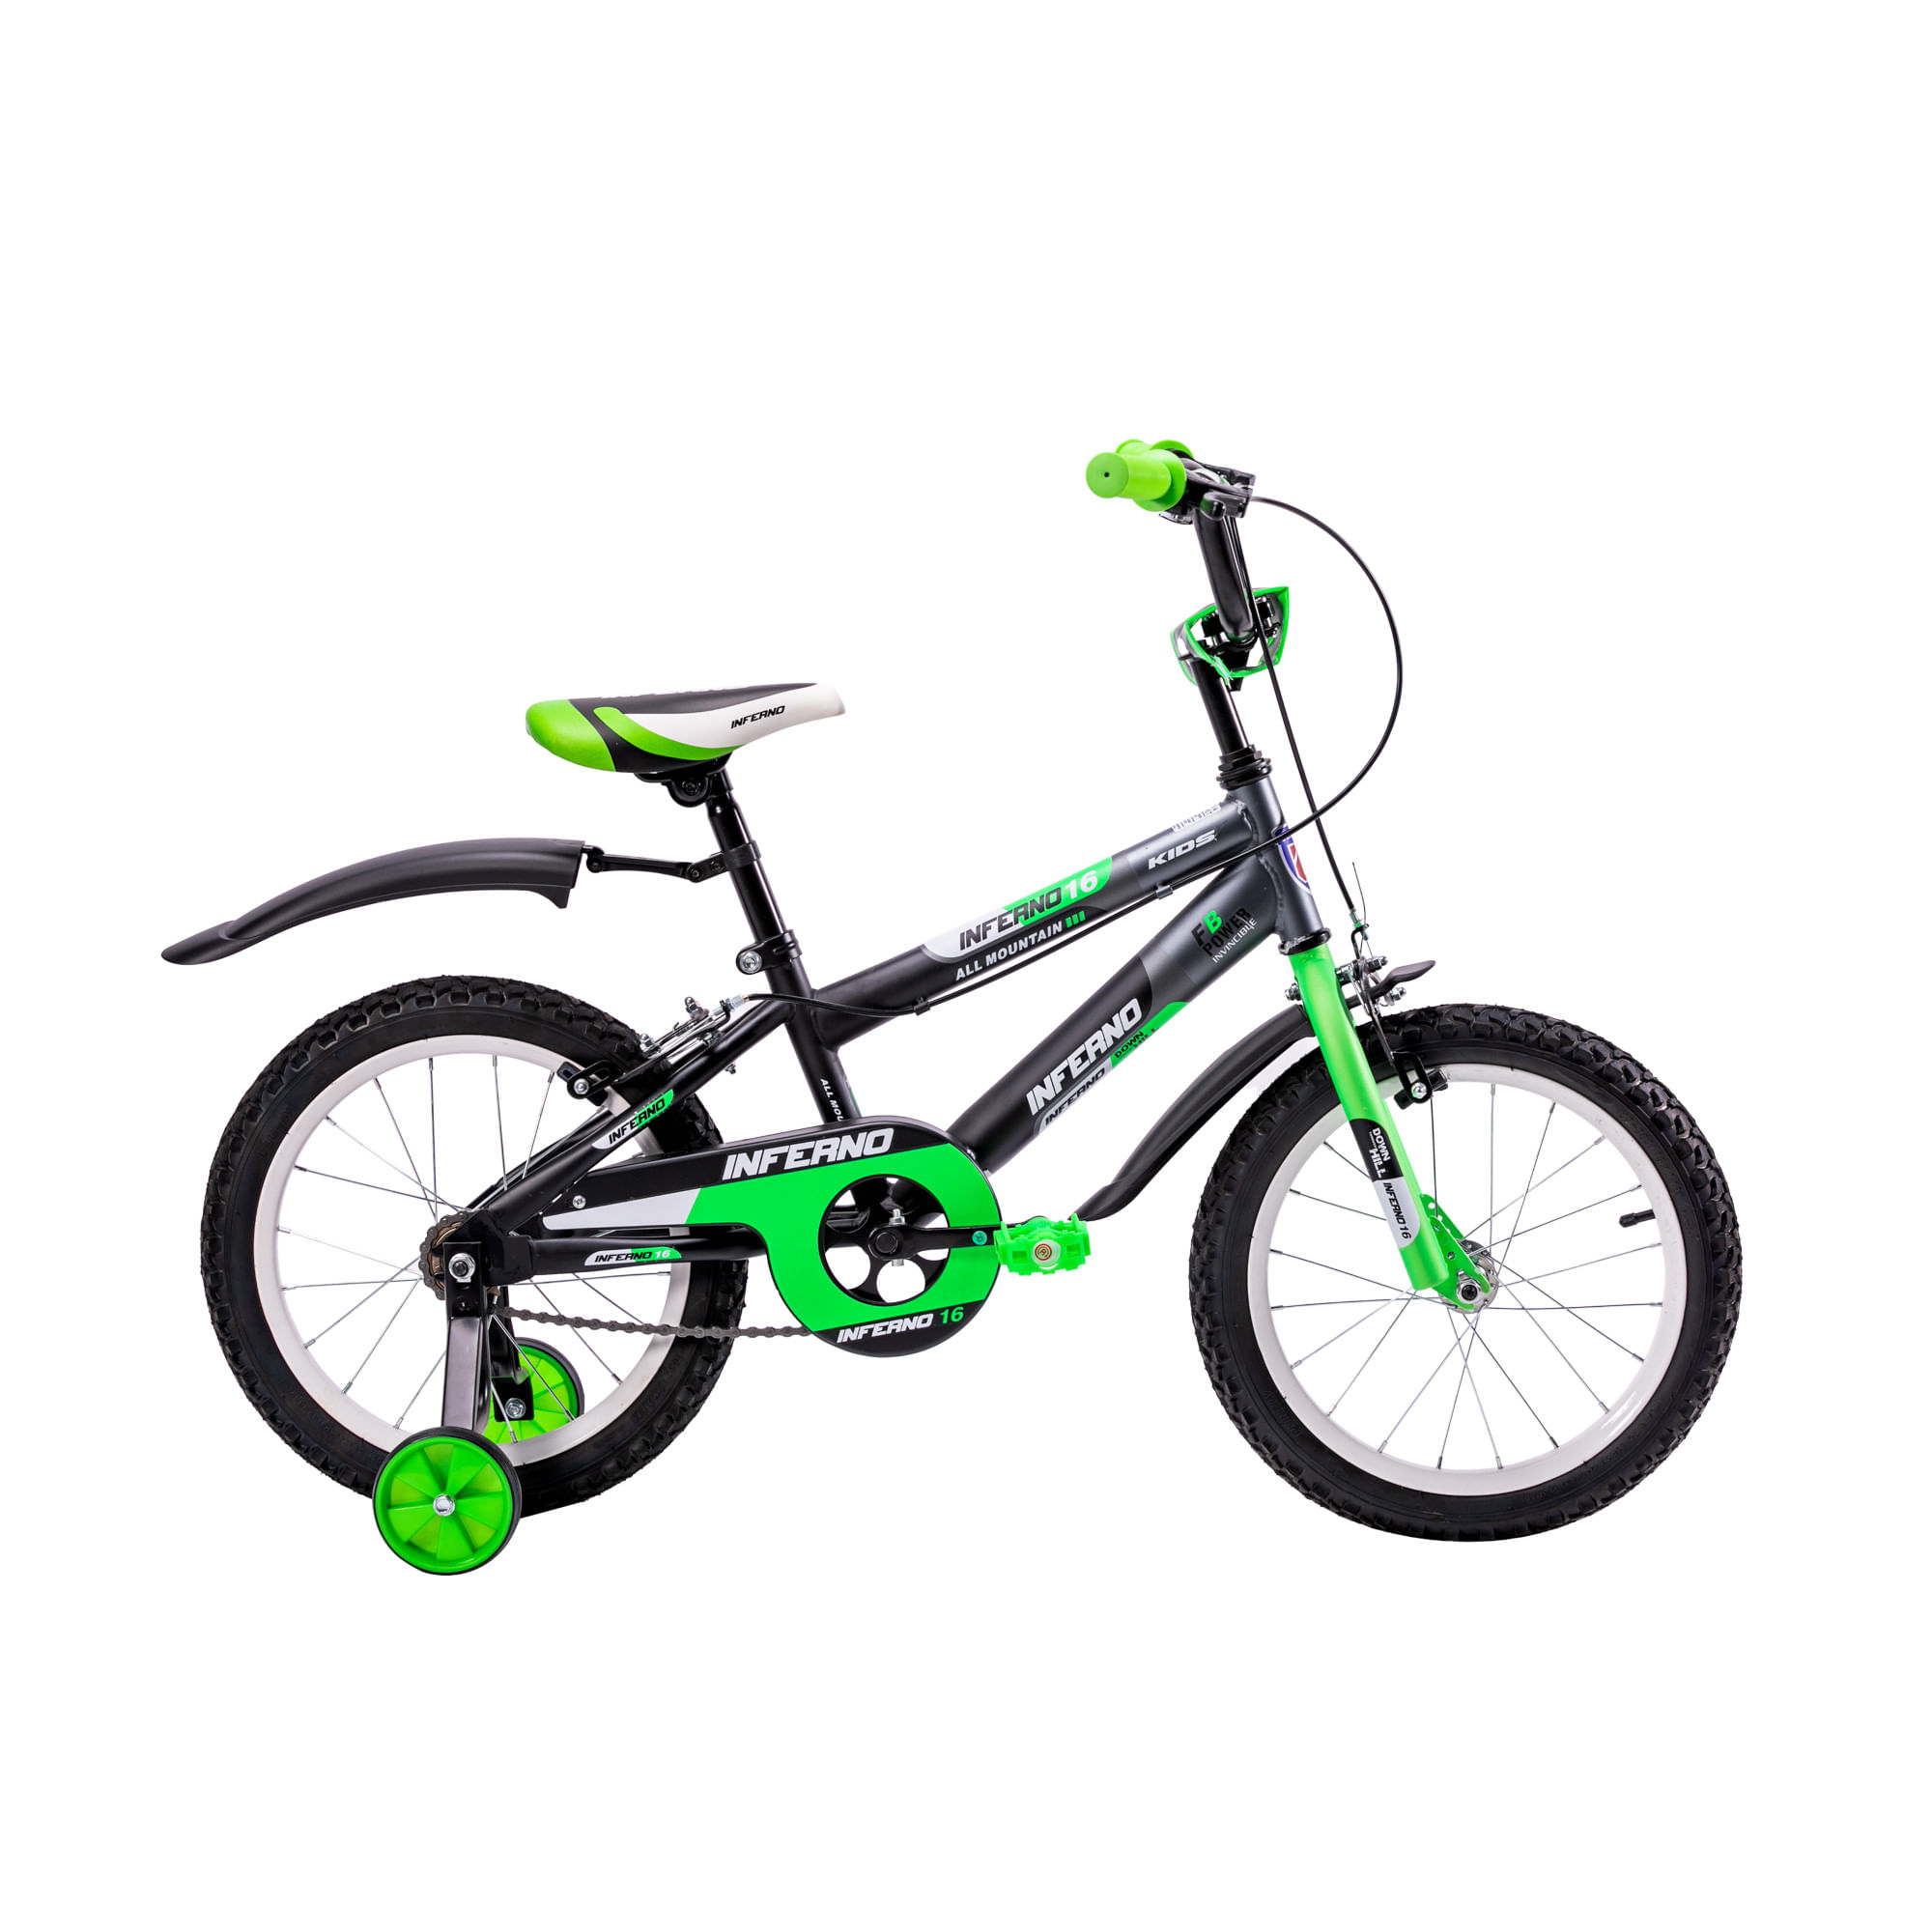 Bicicleta para niño de 5 a 10 años, Rodada 16, Negro-Blanco-Rojo-Azul, con  rueditas de entrenamiento. Unibike Inferno Urbana